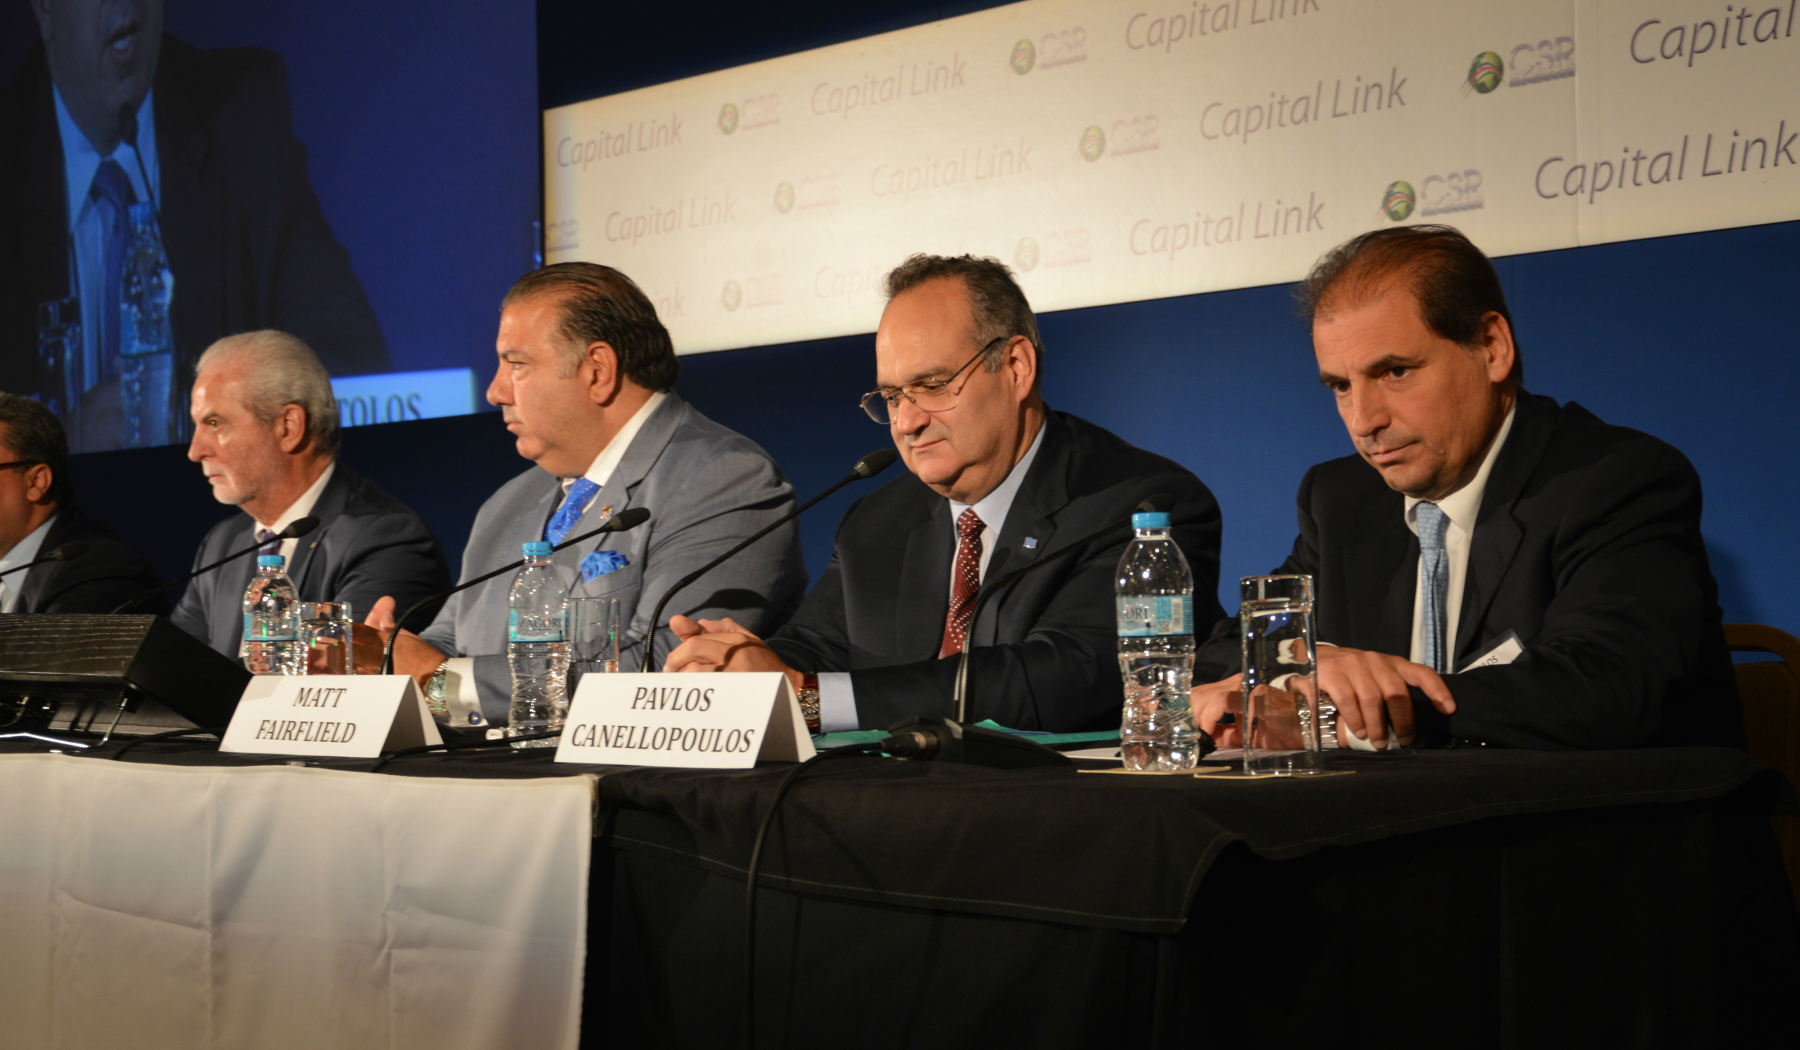 Απο αριστερά:οι κ.κ. John Calamos, John Koudounis, Matt Fairfield και Παύλος Κανελλόπουλος